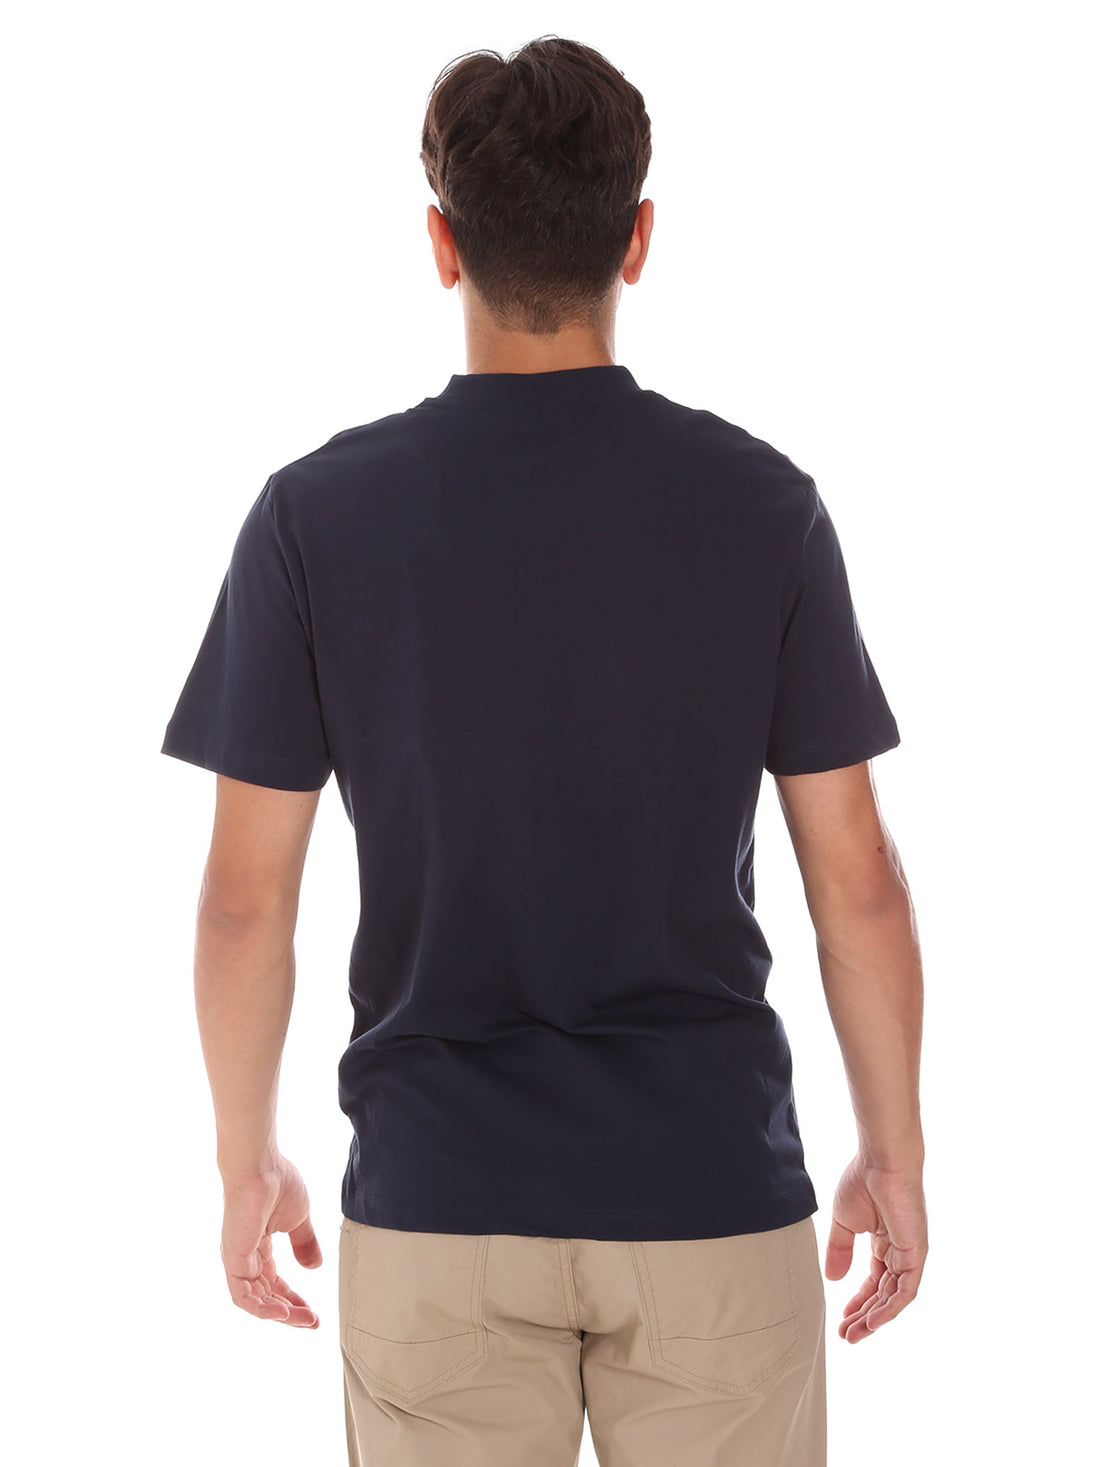 T-shirt Blu Invicta